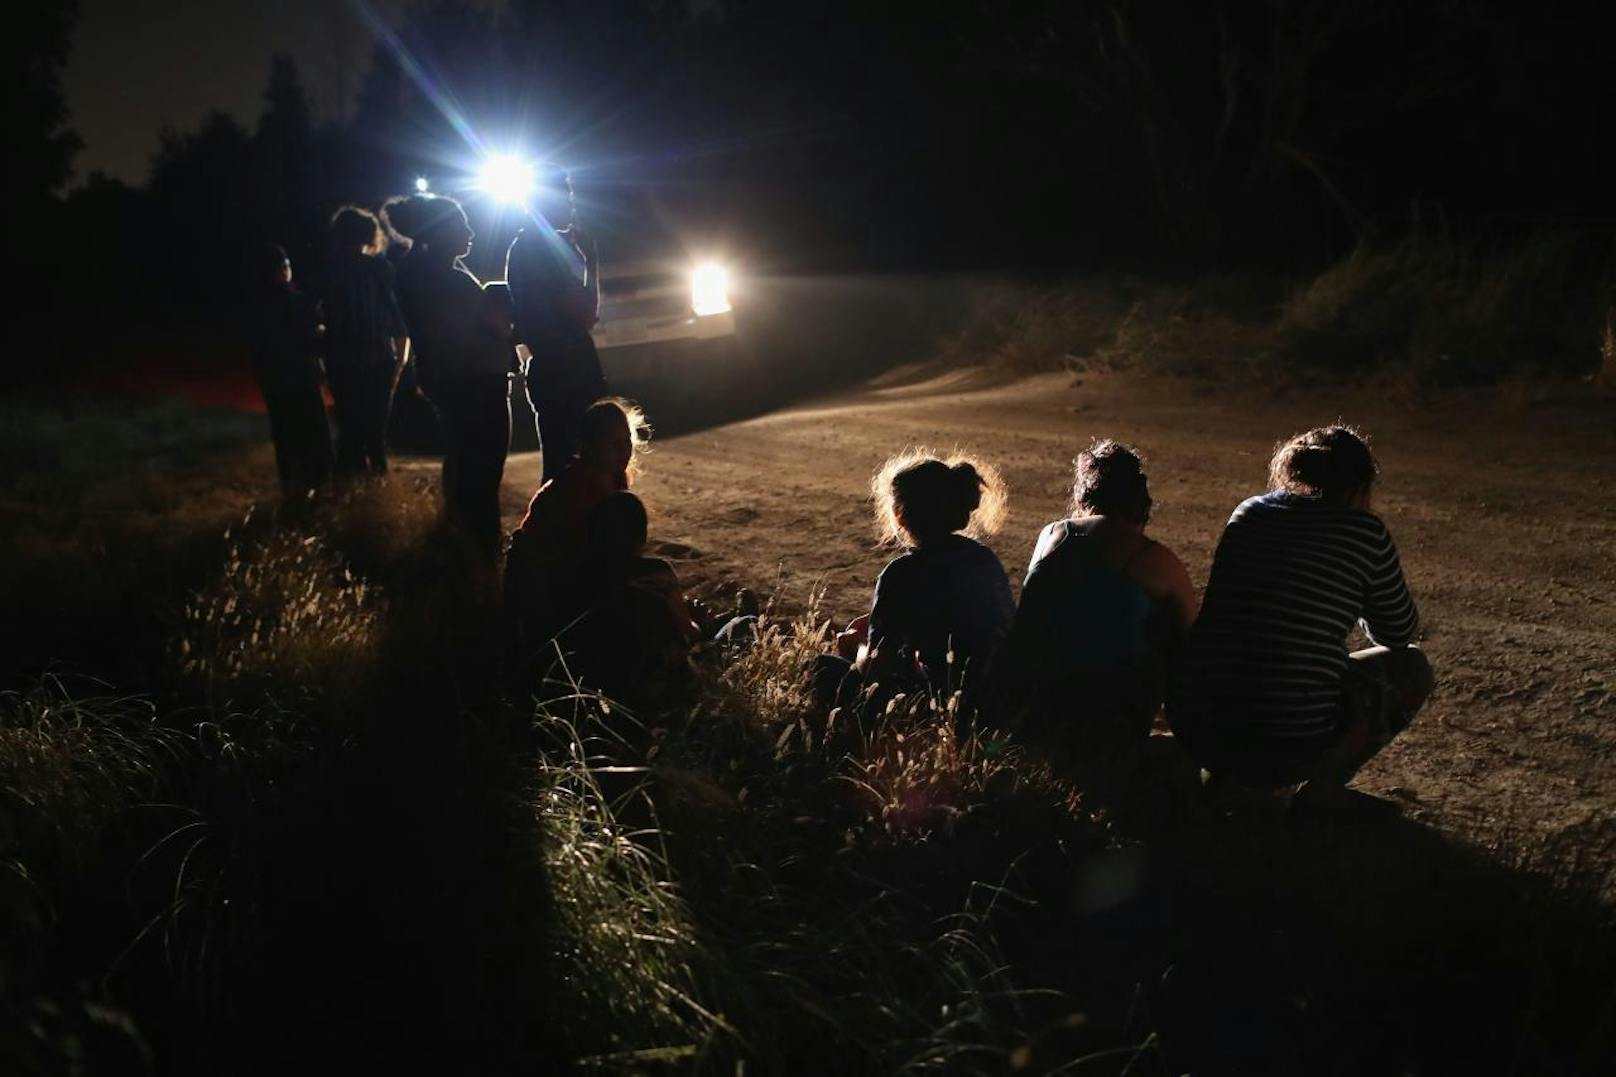 Die Szene trug sich am Dienstag (12. Juni 2018) im Grenzort McAllen in Texas zu und wurde von Getty-Fotograf John Moore festgehalten, der seit nunmehr zehn Jahren über die Migrationsströme aus Lateinamerika in die USA berichtet.